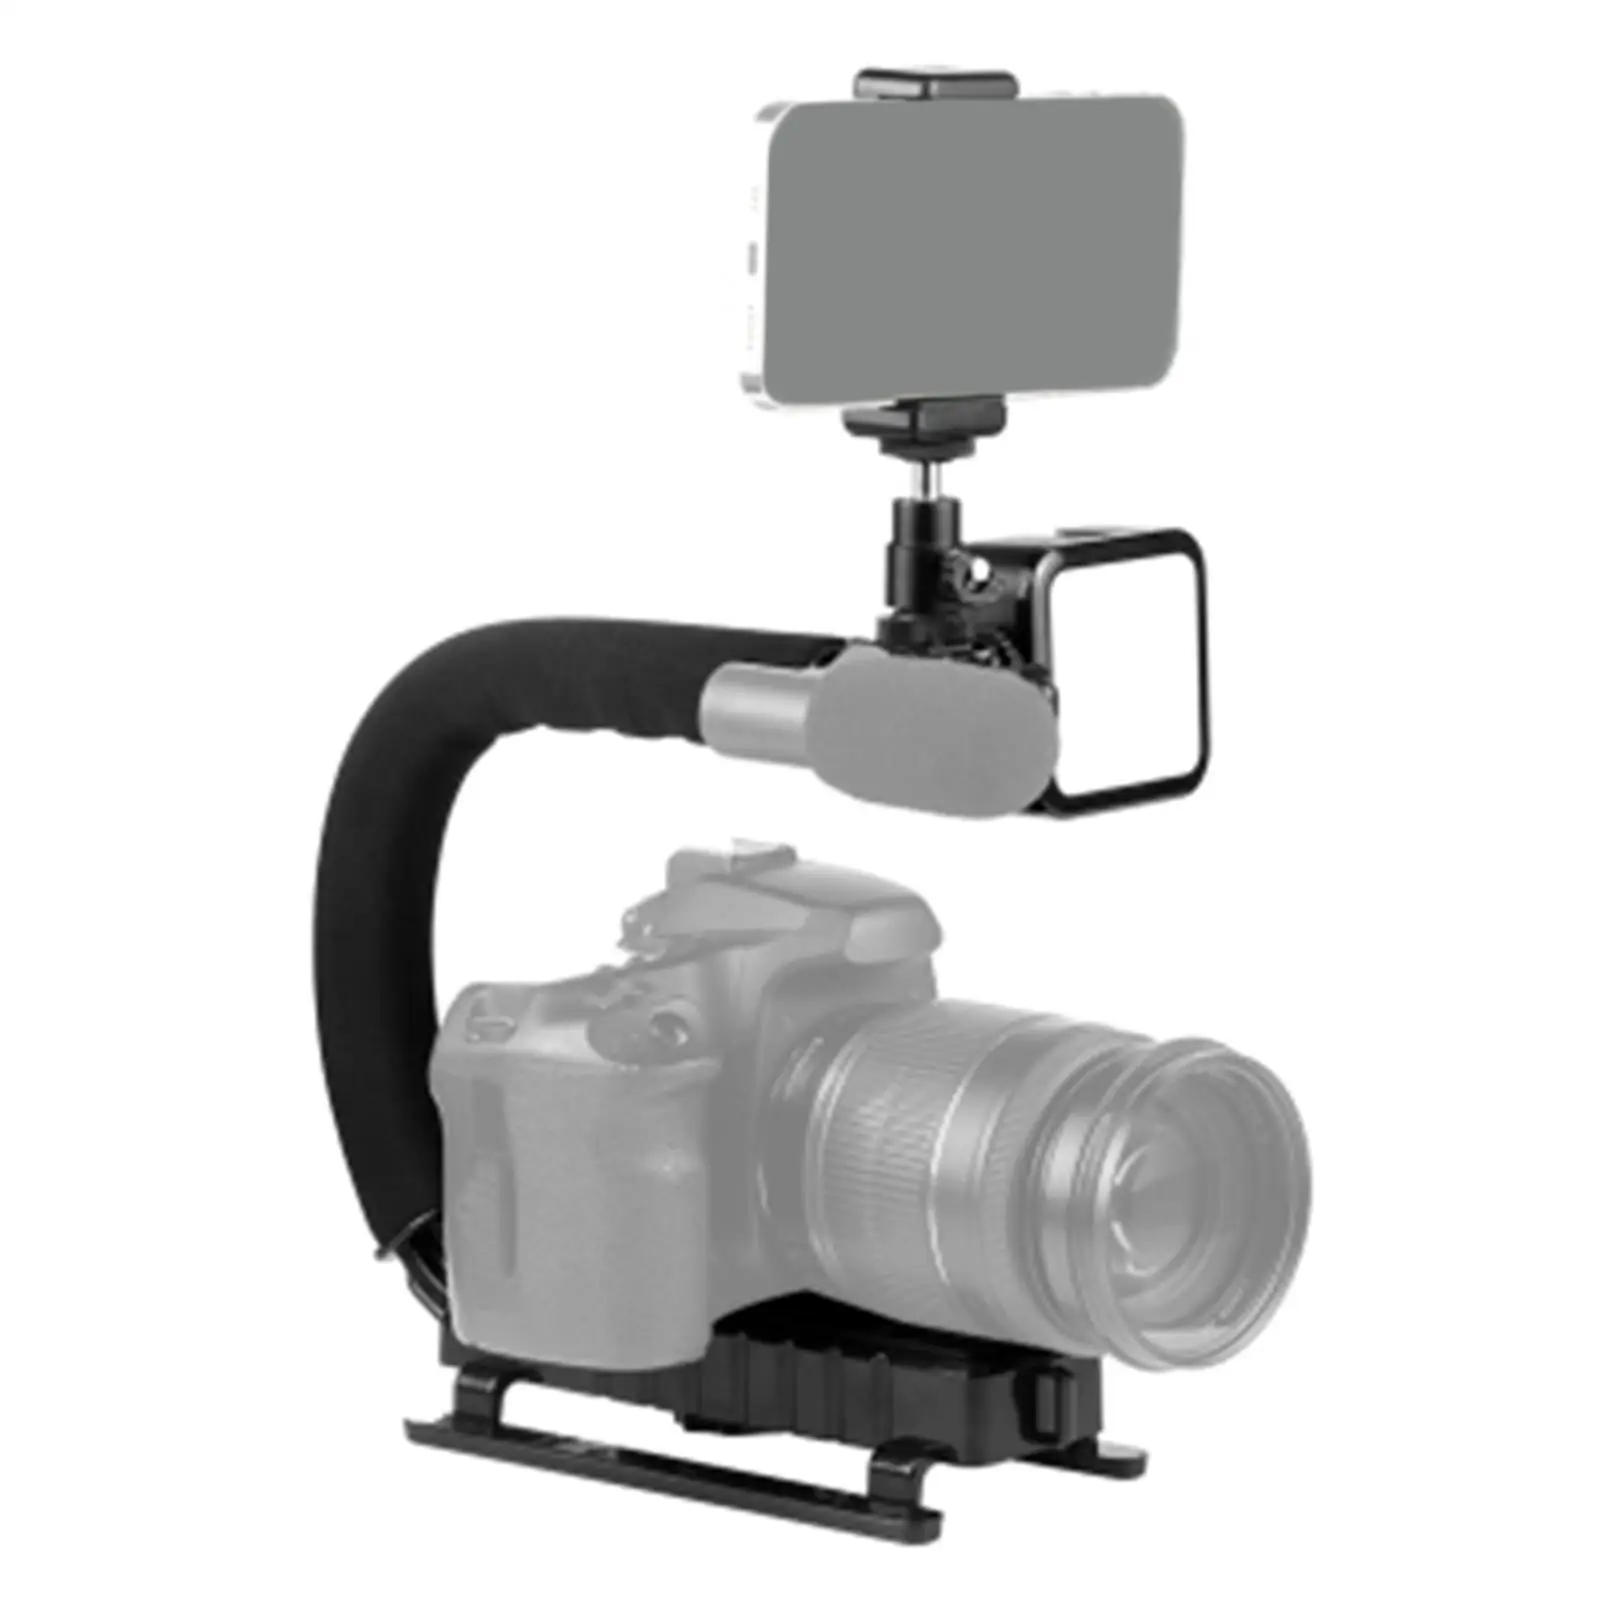 C Shape DV Bracket Stabilizer LED Fill Light Kit for All Slr Cameras and Home DV Camera